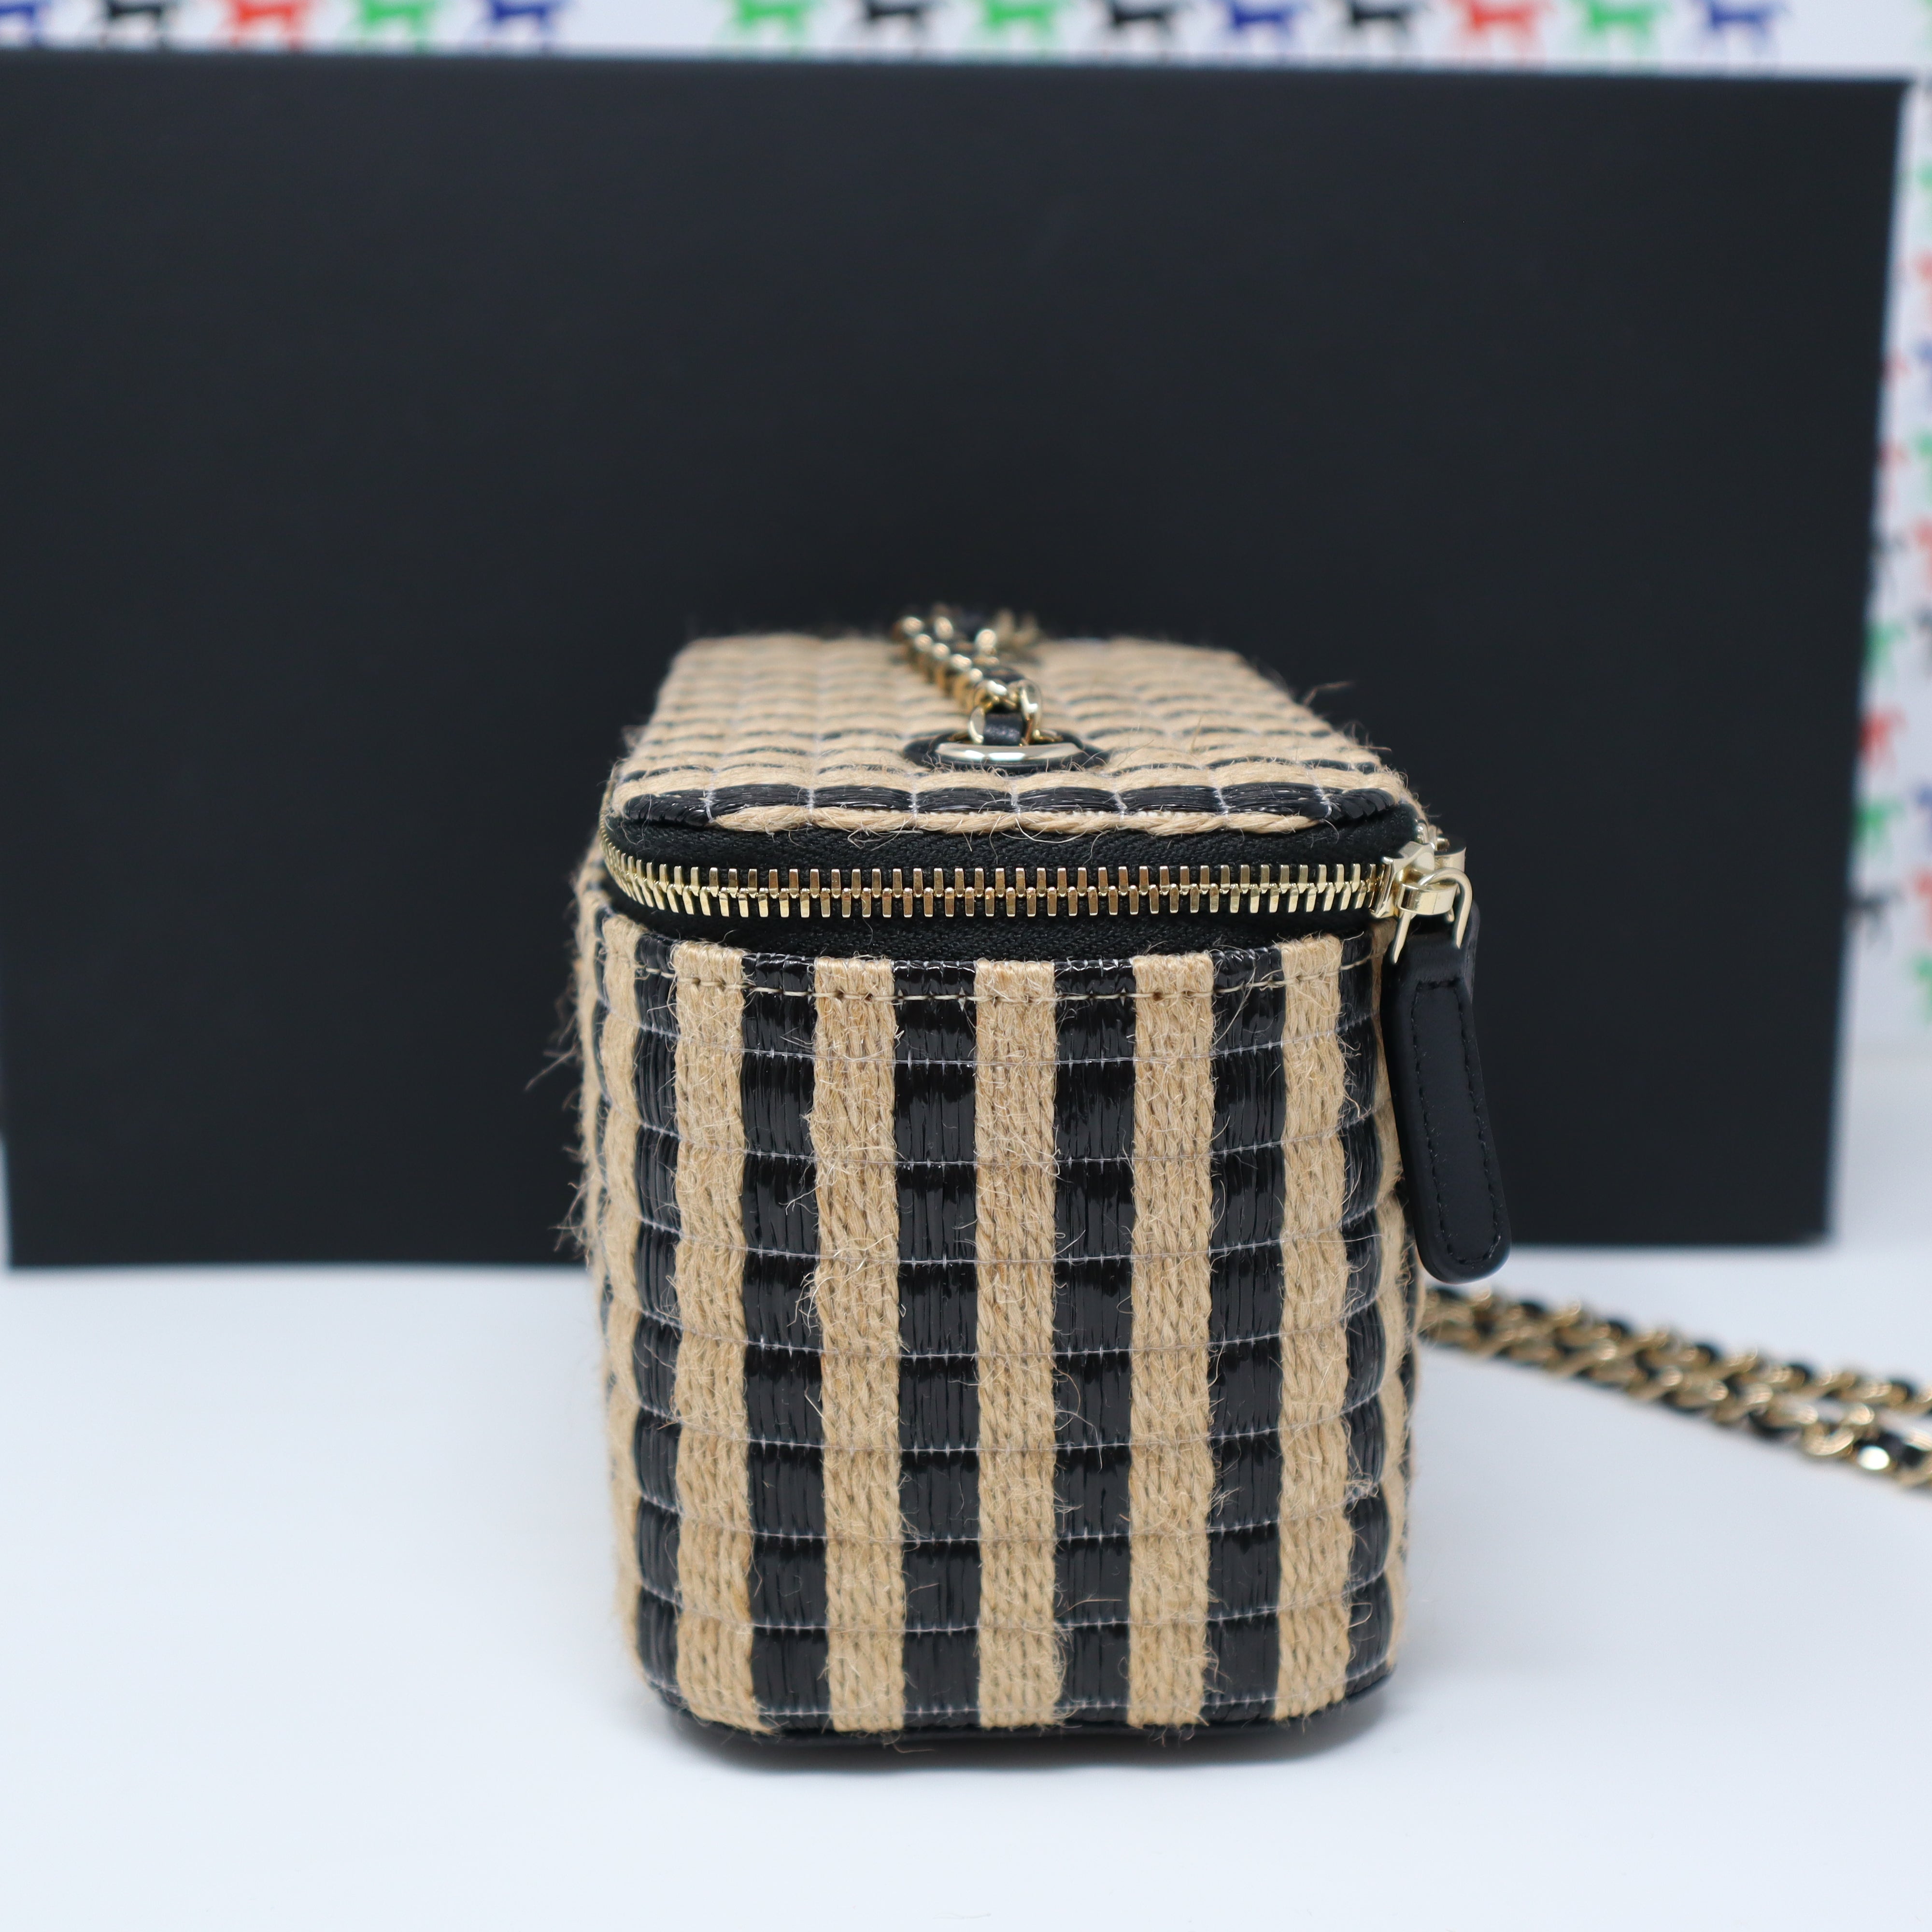 Sold at Auction: CHANEL - 2021 Raffia Jute Striped Belt Bag - Blue / Beige  / Gold Hardware